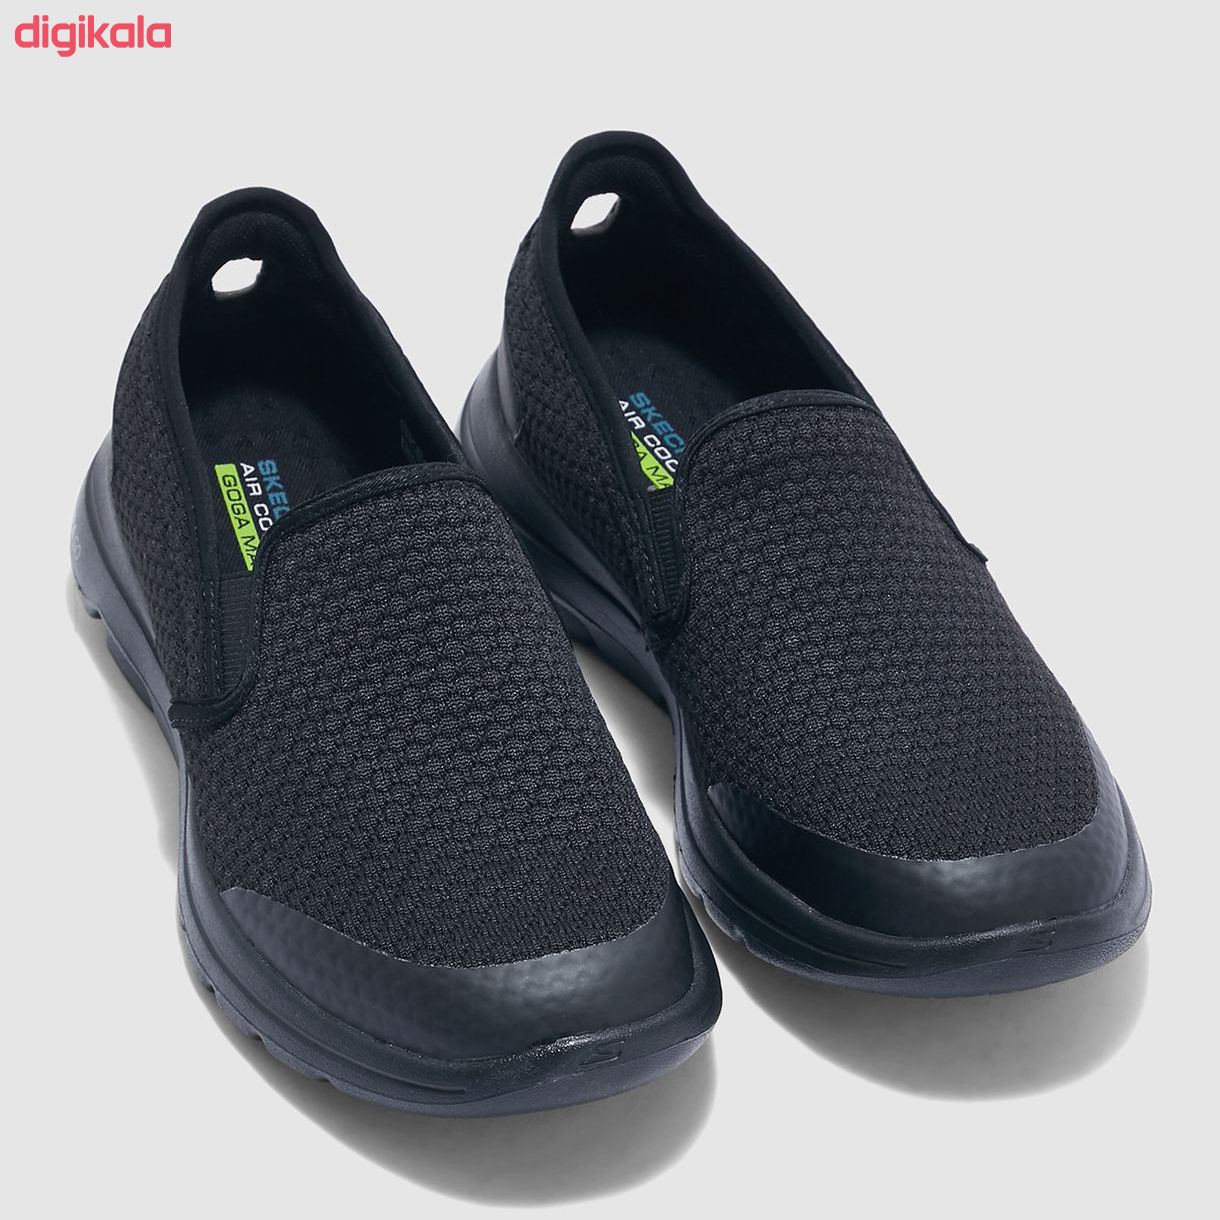 کفش مخصوص پیاده روی مردانه اسکچرز مدل RS-55510 bbk